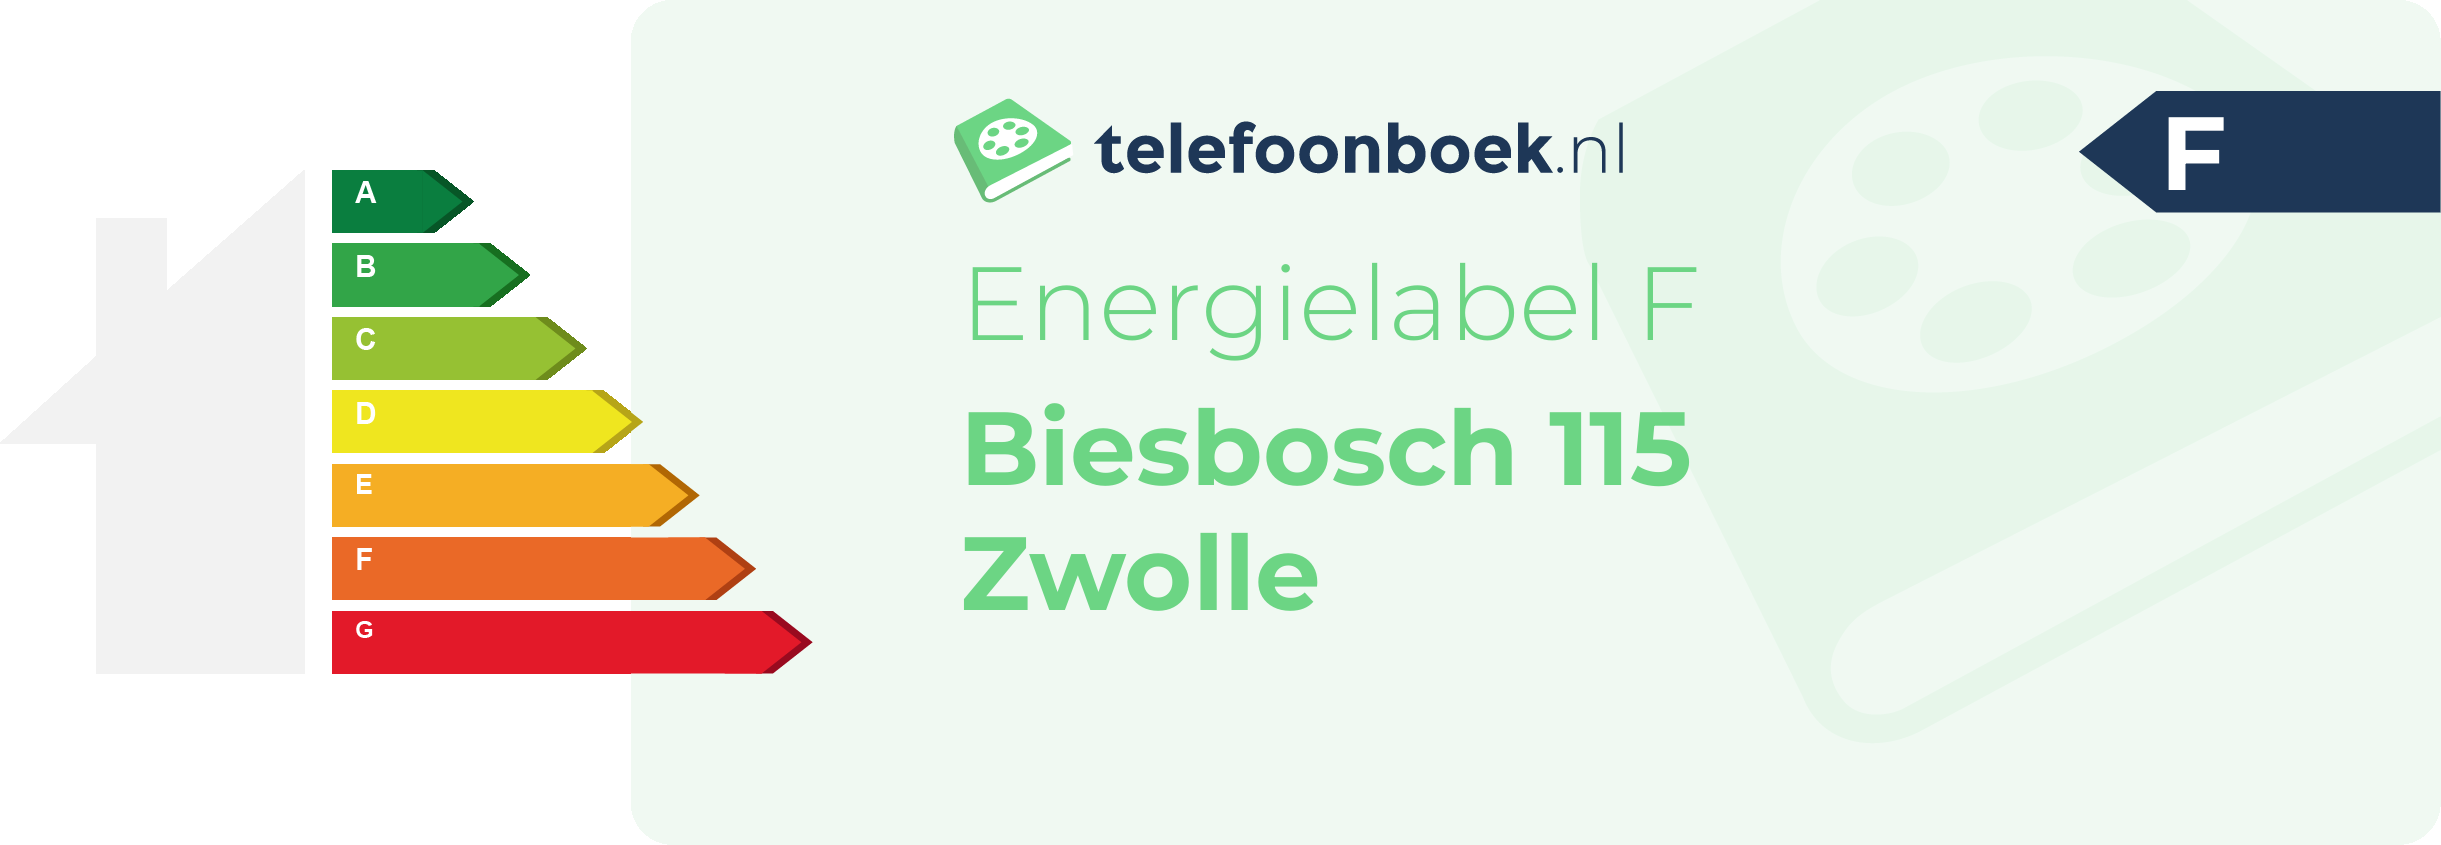 Energielabel Biesbosch 115 Zwolle